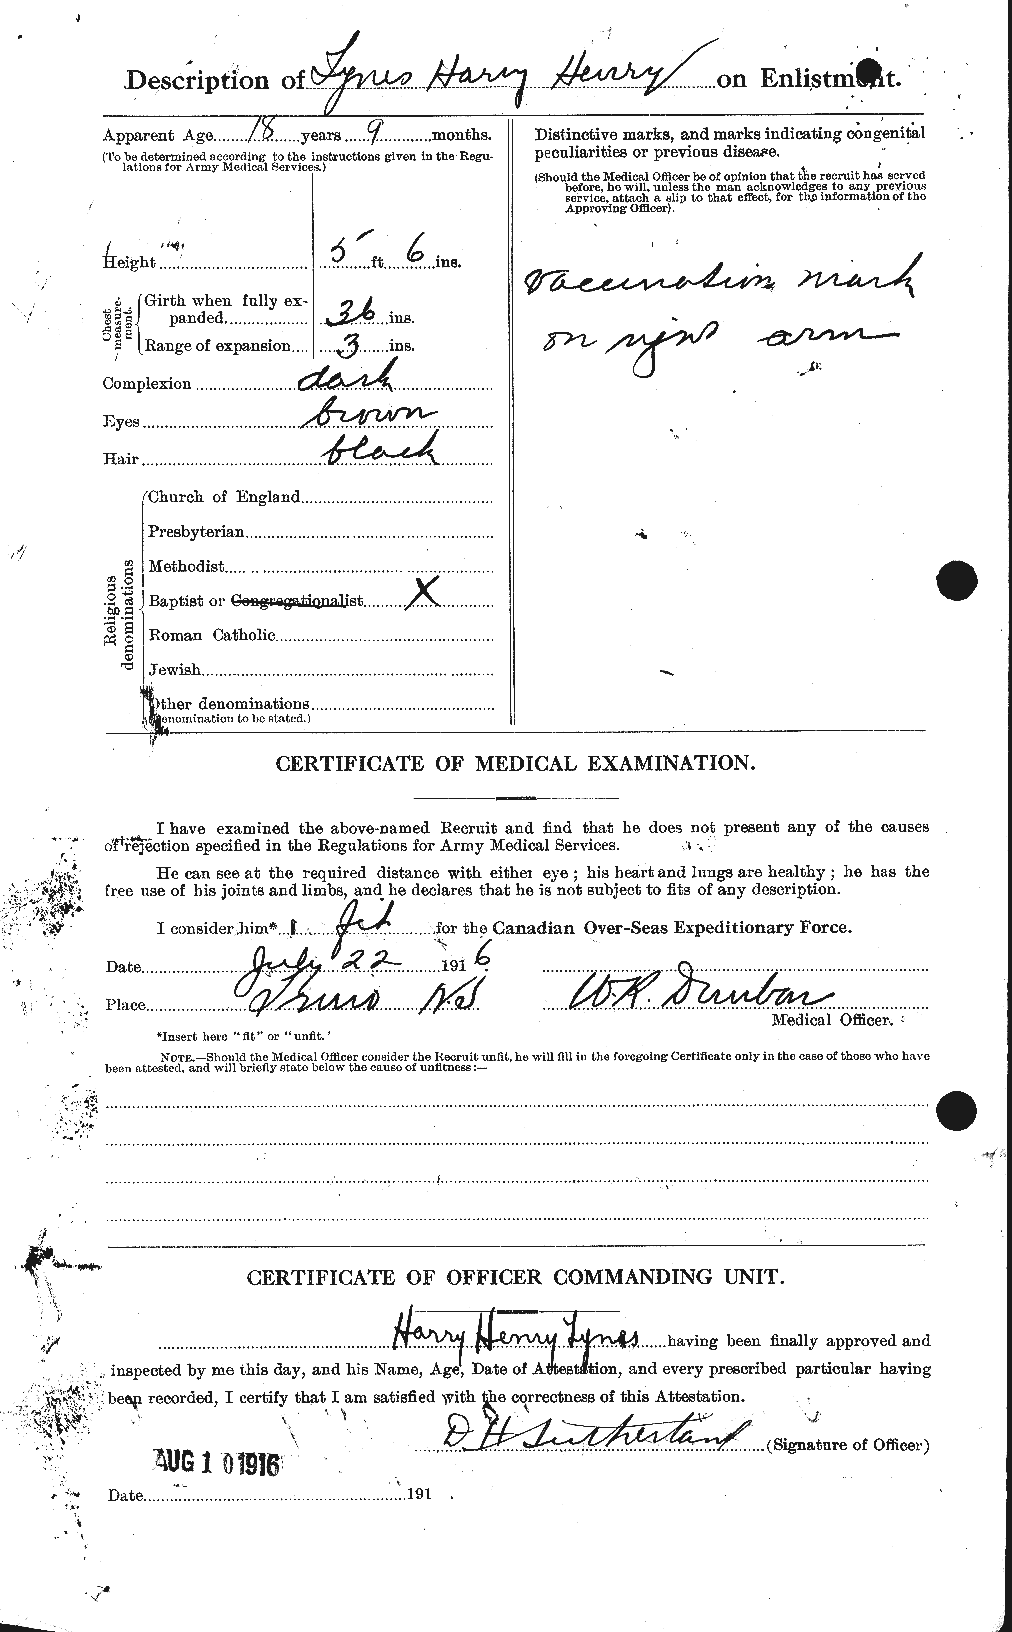 Dossiers du Personnel de la Première Guerre mondiale - CEC 644539b